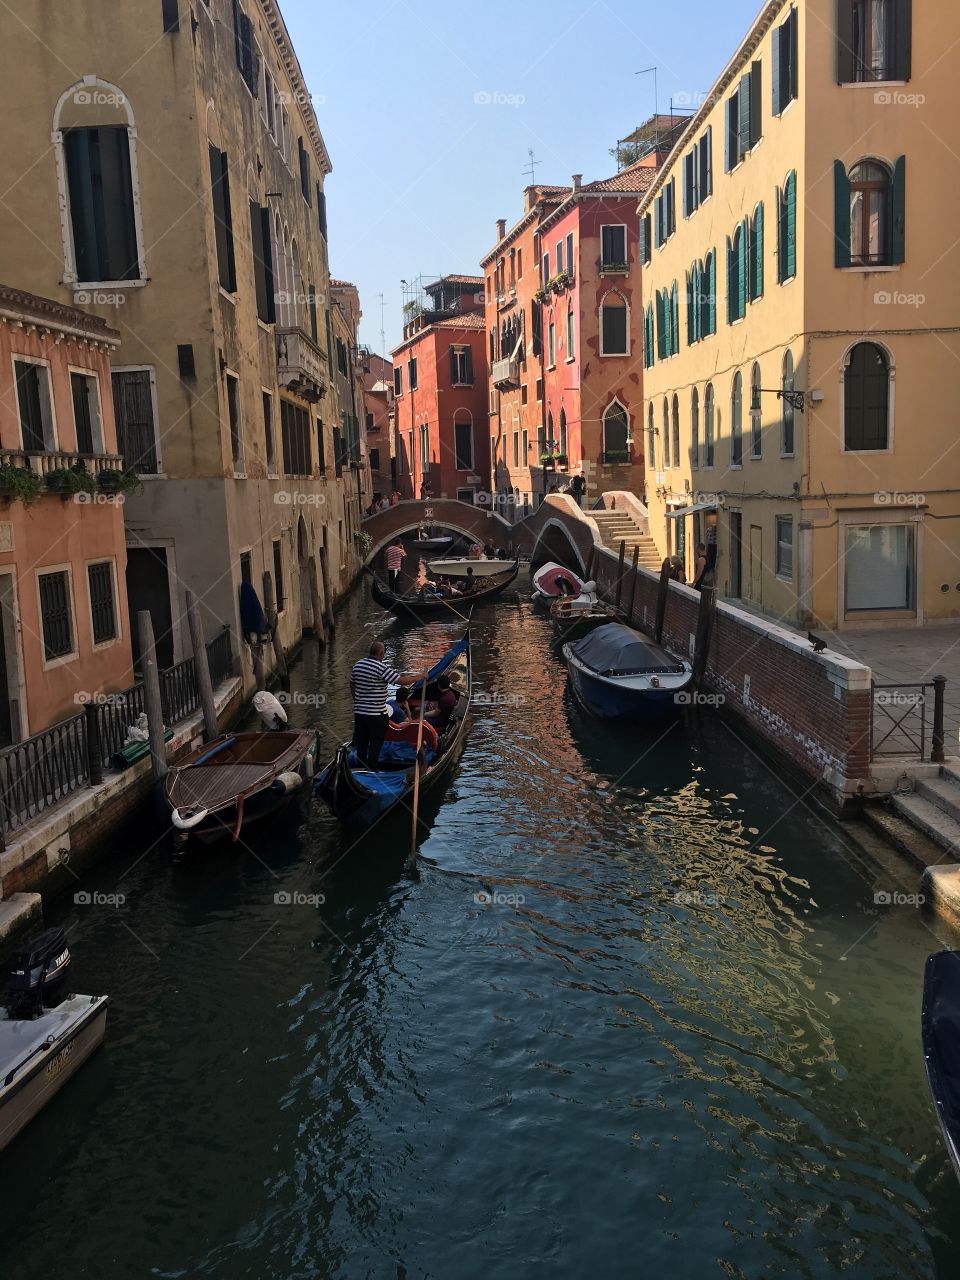 Quaint canals of Venice